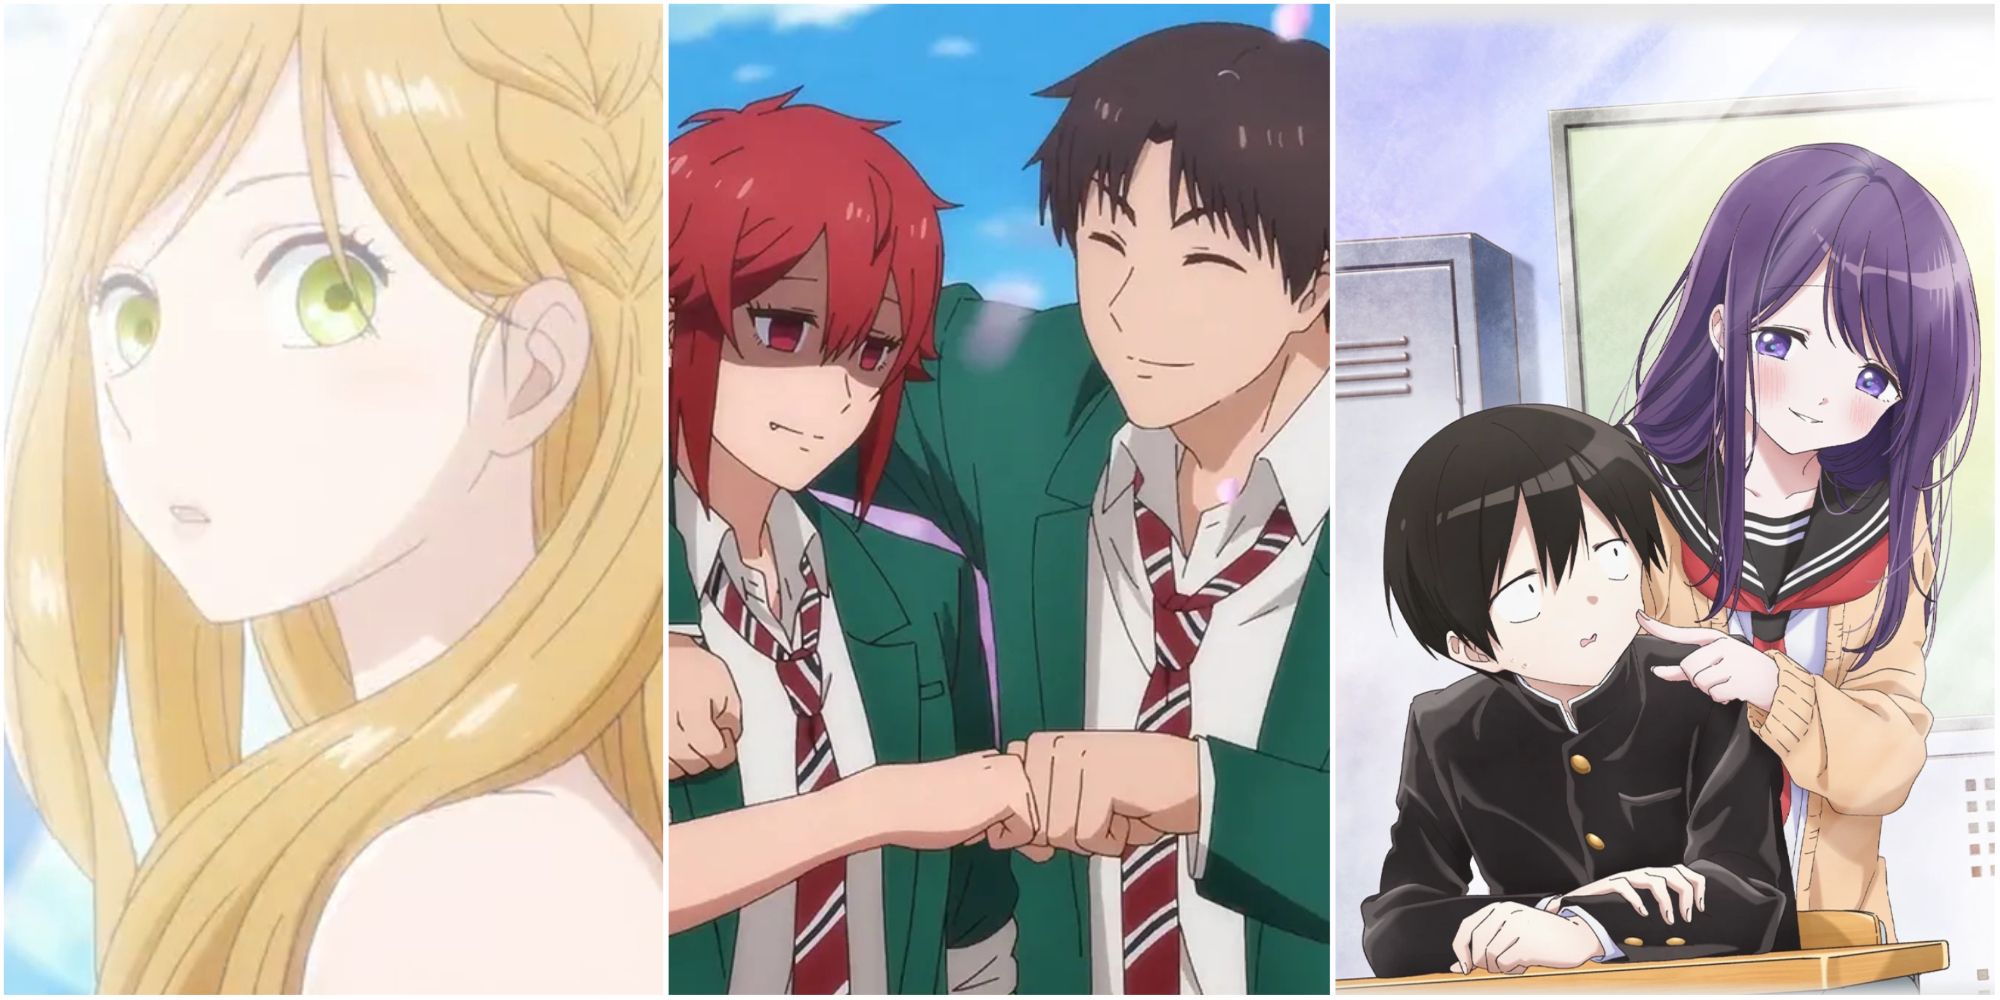 Pin on Romance anime